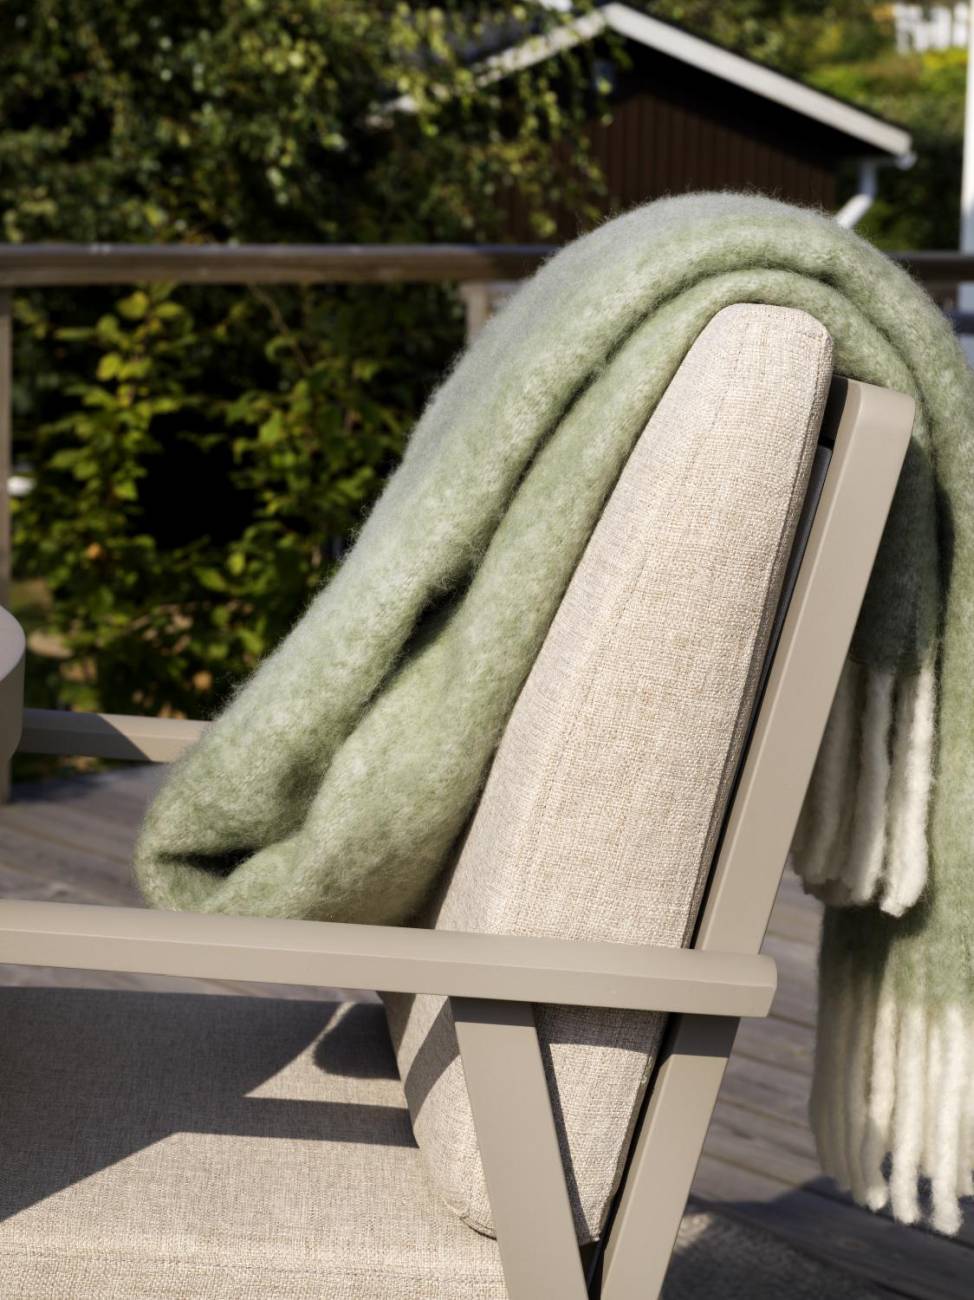 Der Gartensessel Samvaro Big überzeugt mit seinem modernen Design. Gefertigt wurde er aus Stoff, welcher einen kaki Farbton besitzt. Das Gestell ist aus Metall und hat eine kaki Farbe. Die Sitzhöhe des Sessels beträgt 43 cm.